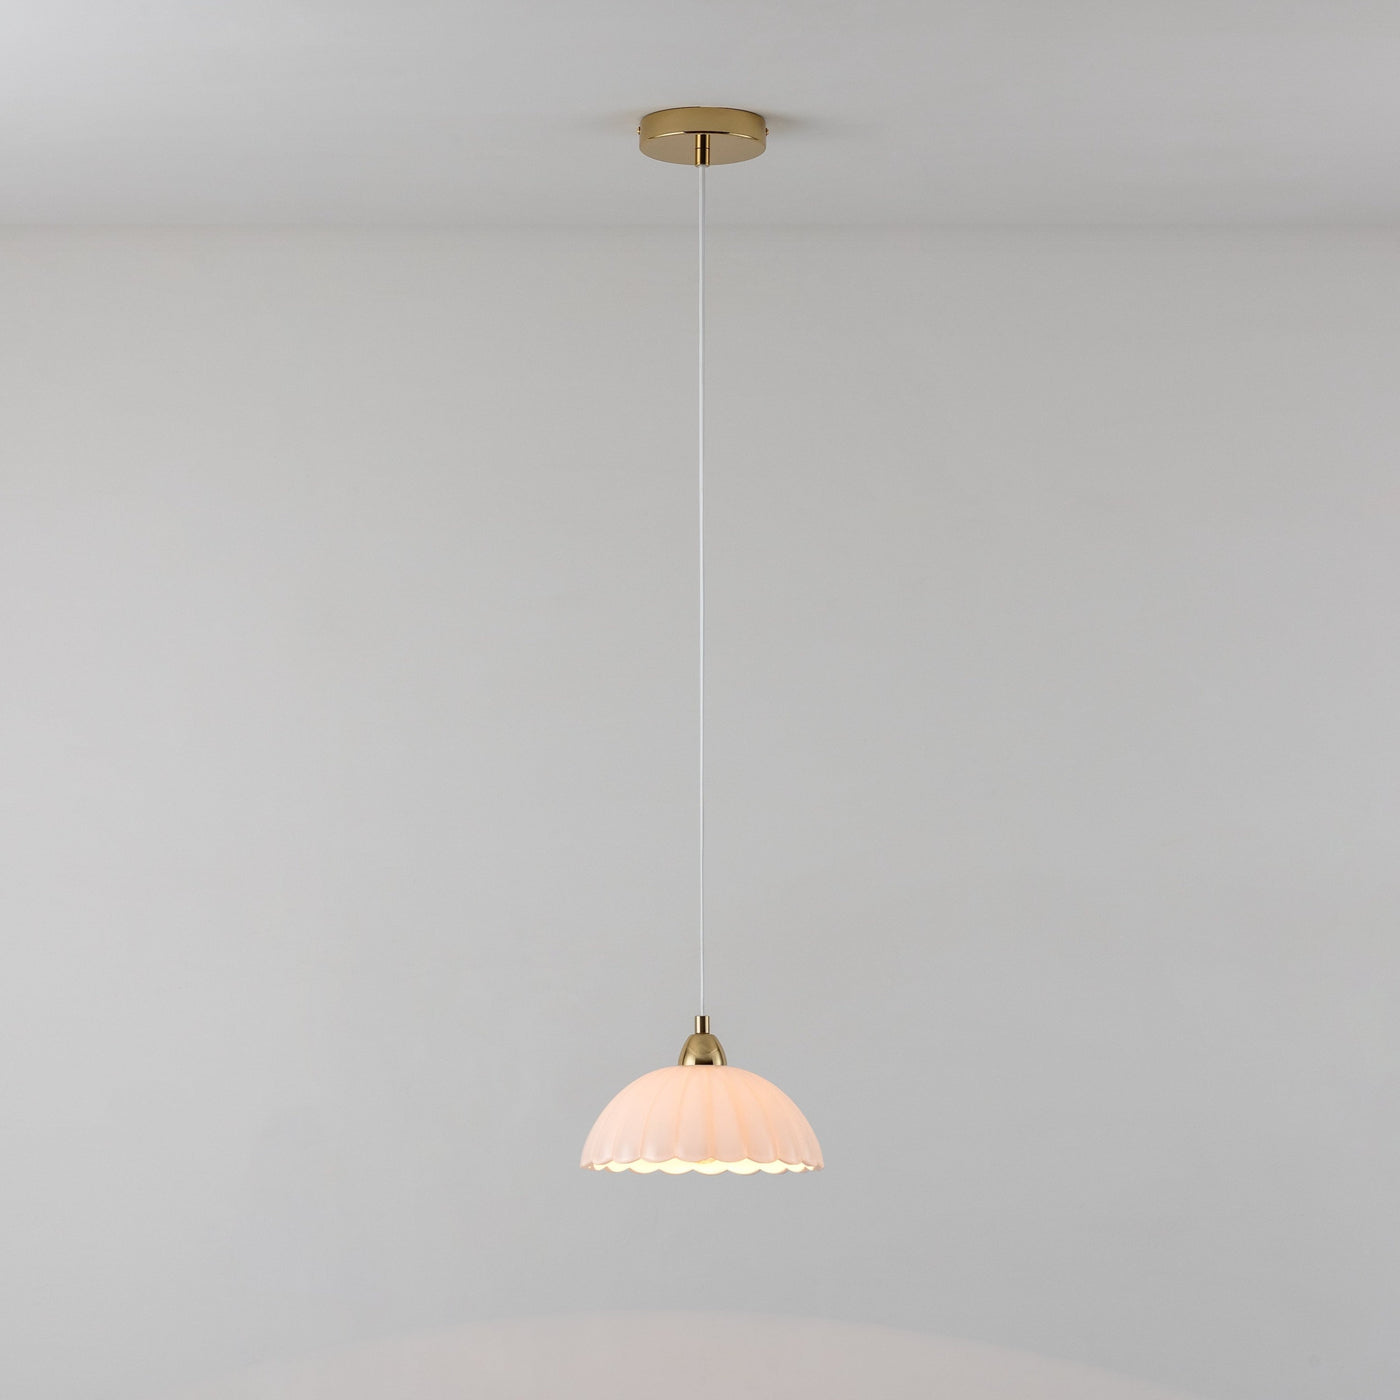 flower glass pendant ceiling light by houseof.